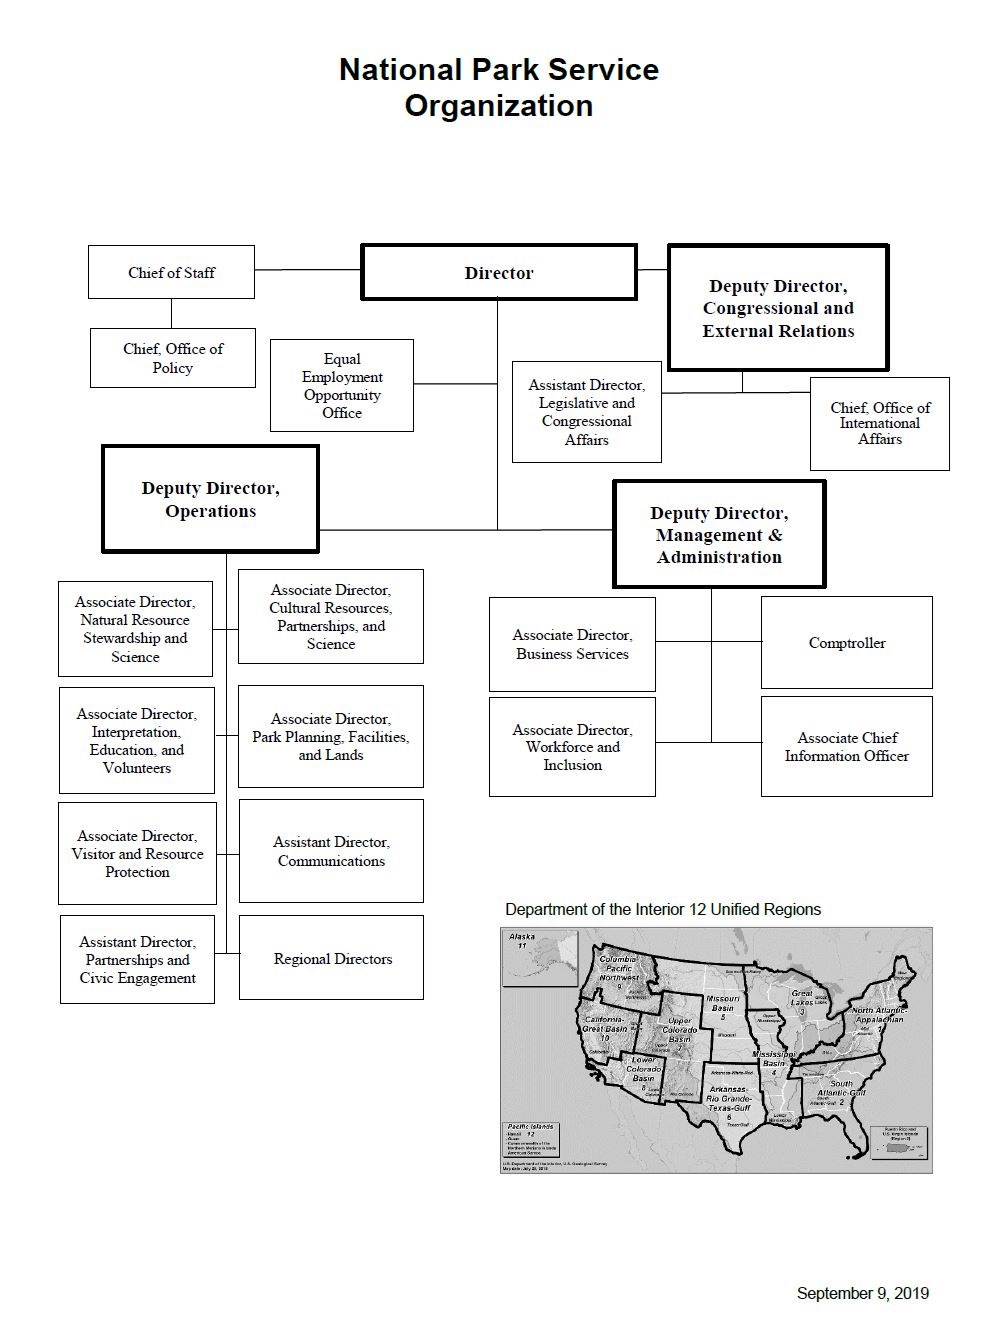 NPS Organizational Chart